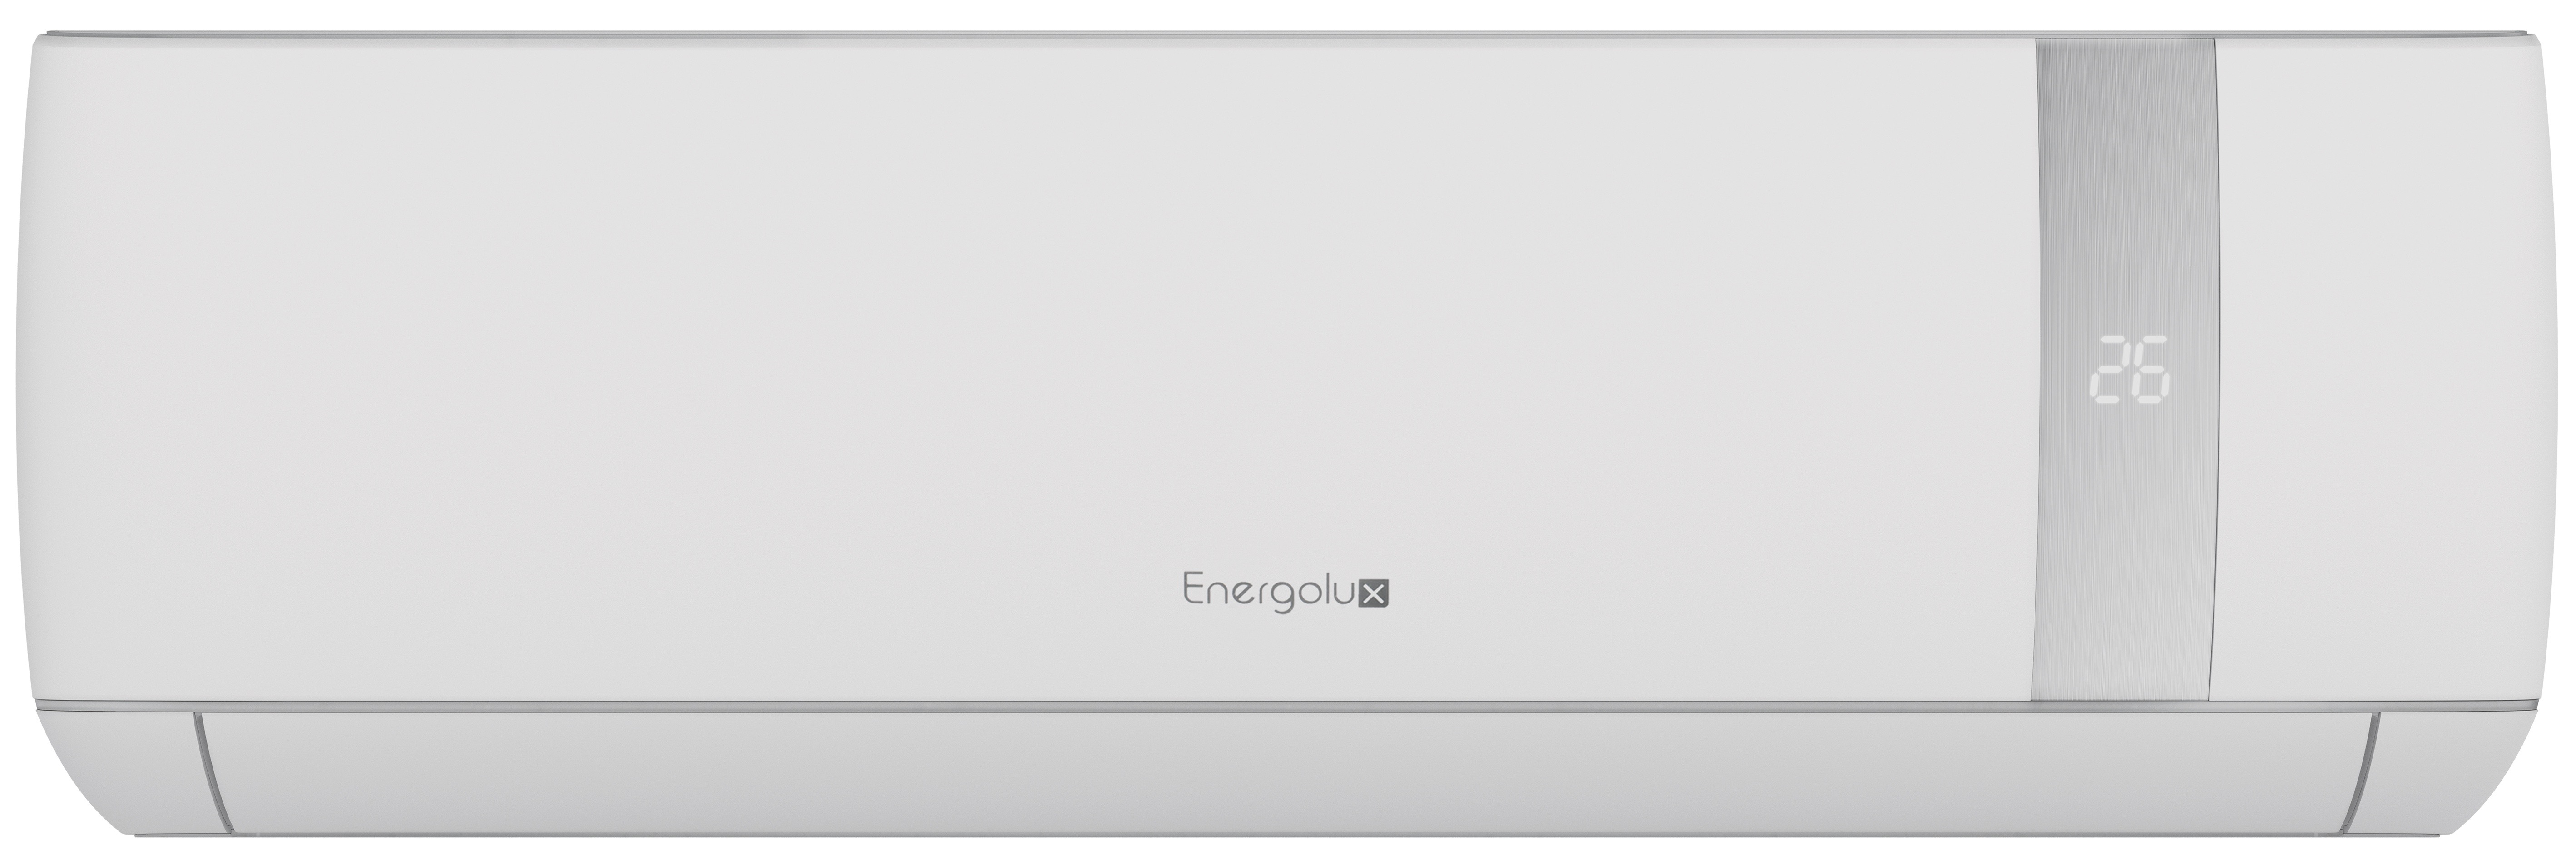 1. Energolux сплит-система настенный SAS24BN1-AI (серия Bern)